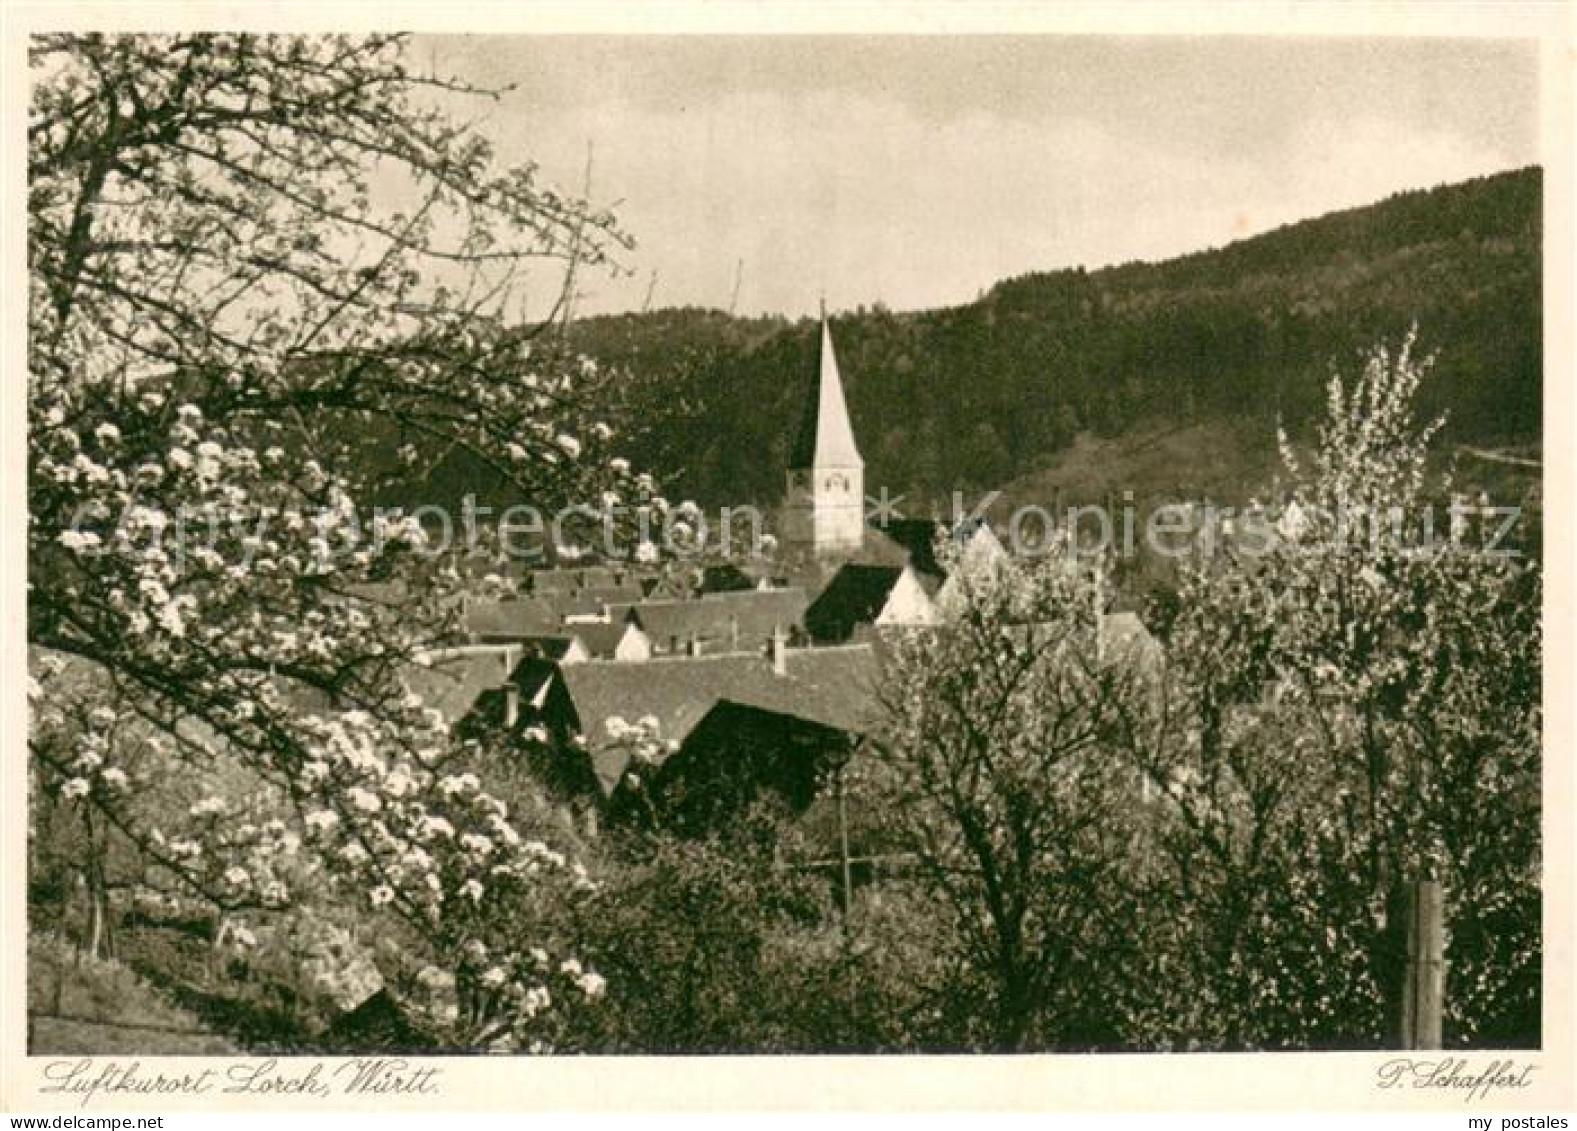 73669639 Lorch Wuerttemberg Ortsmotiv Mit Kirche Baumbluete Kupfertiefdruck Lorc - Lorch